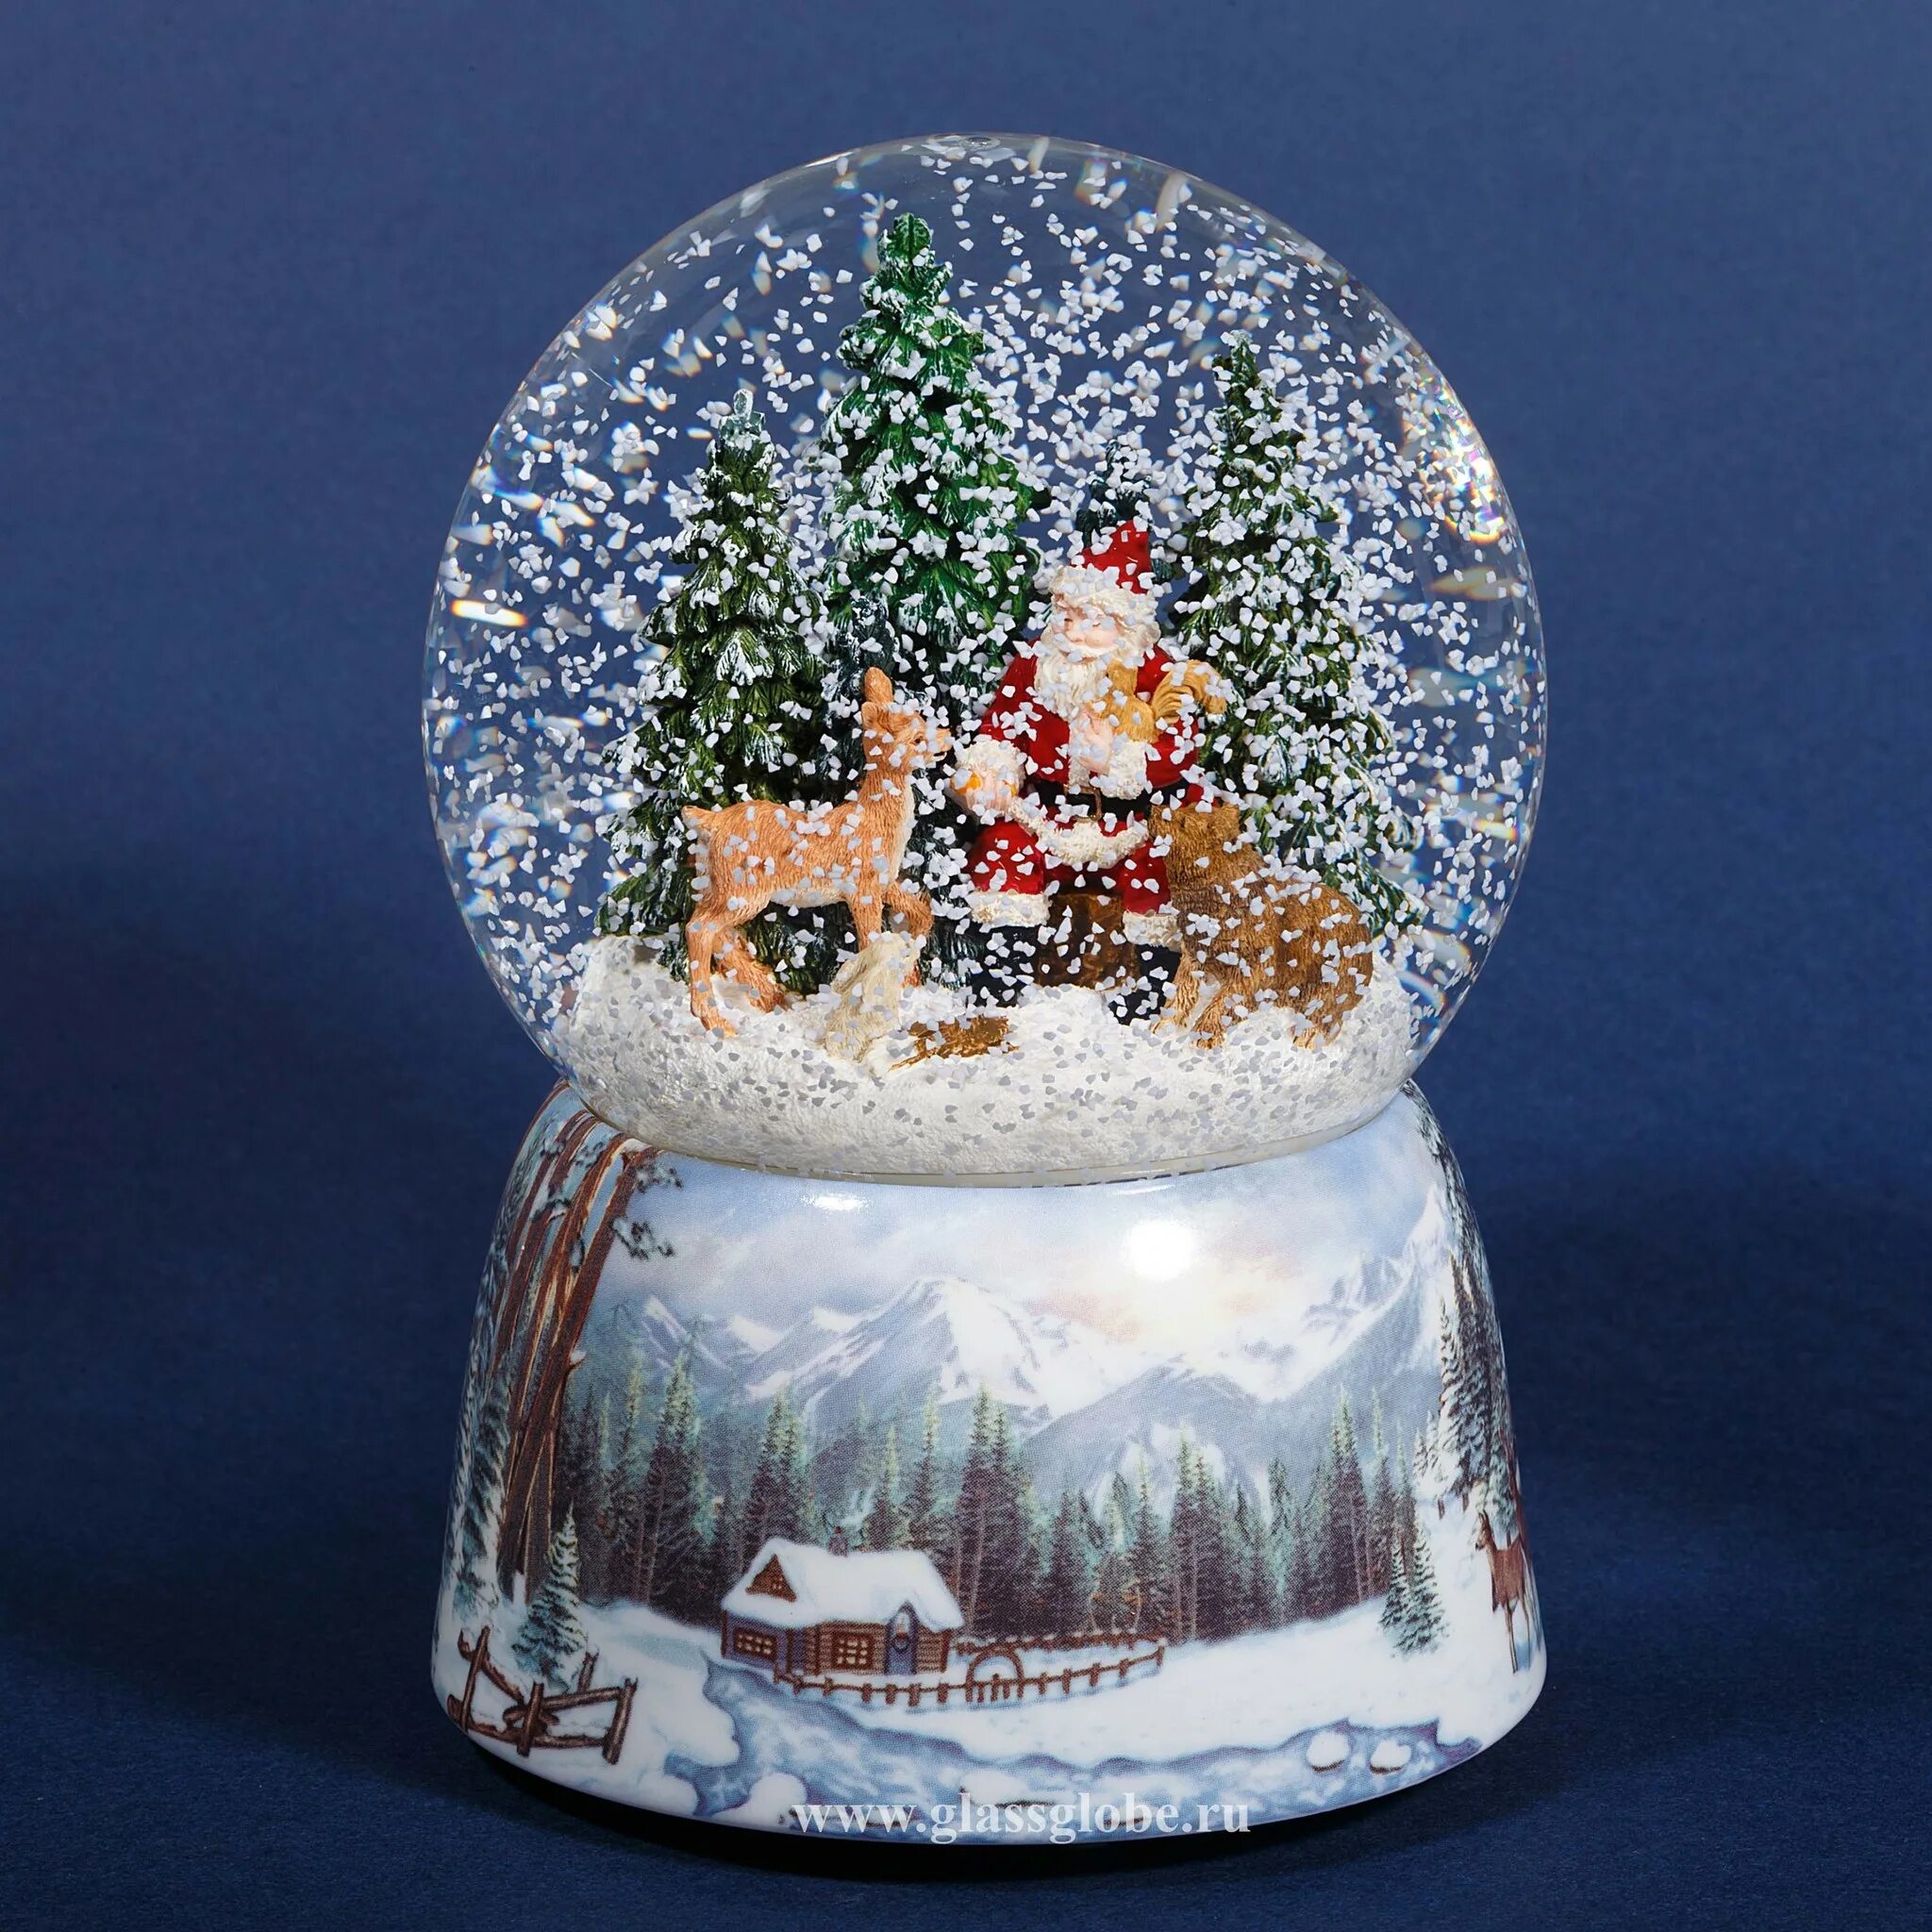 Шары внутри снег. Снежный шар Luville. Снежный шар Lefard новогодний 175-190. Стеклянный шар со снегом. Новогодний стеклянный шар со снегом.